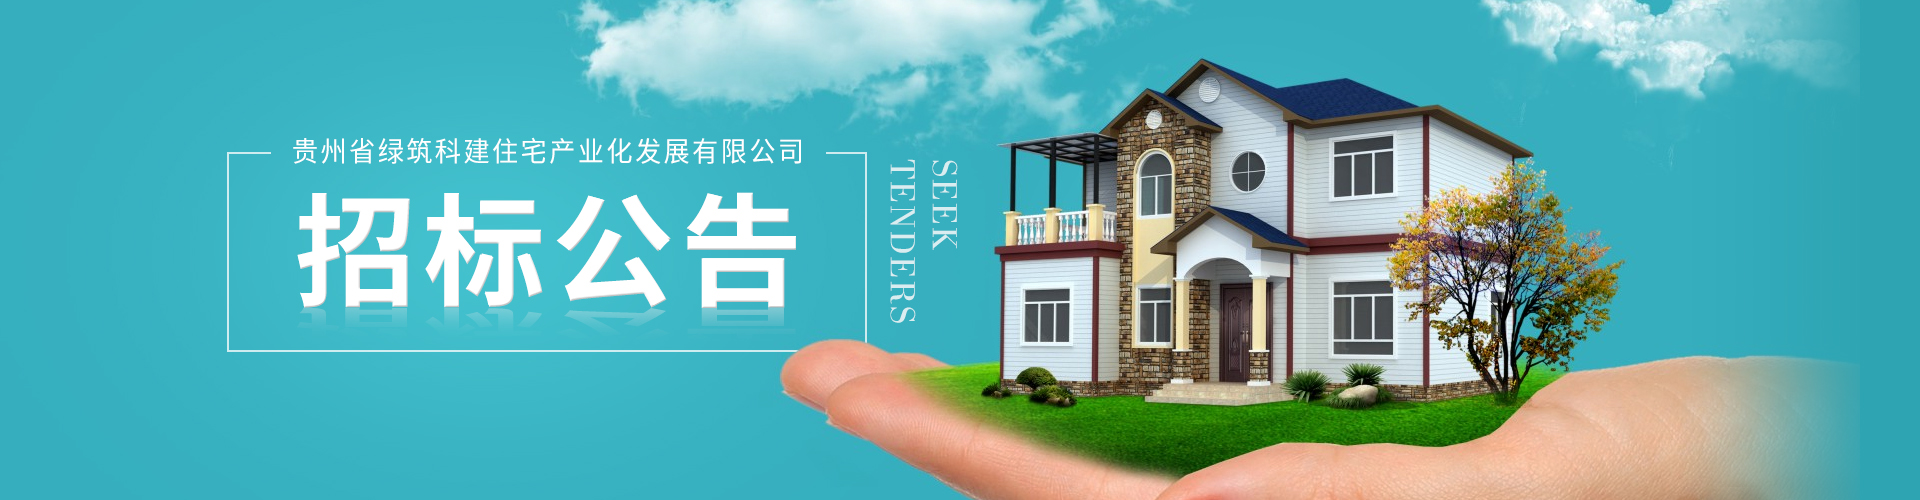 贵州省绿筑科建住宅产业化发展有限公司水泥采购招标公告